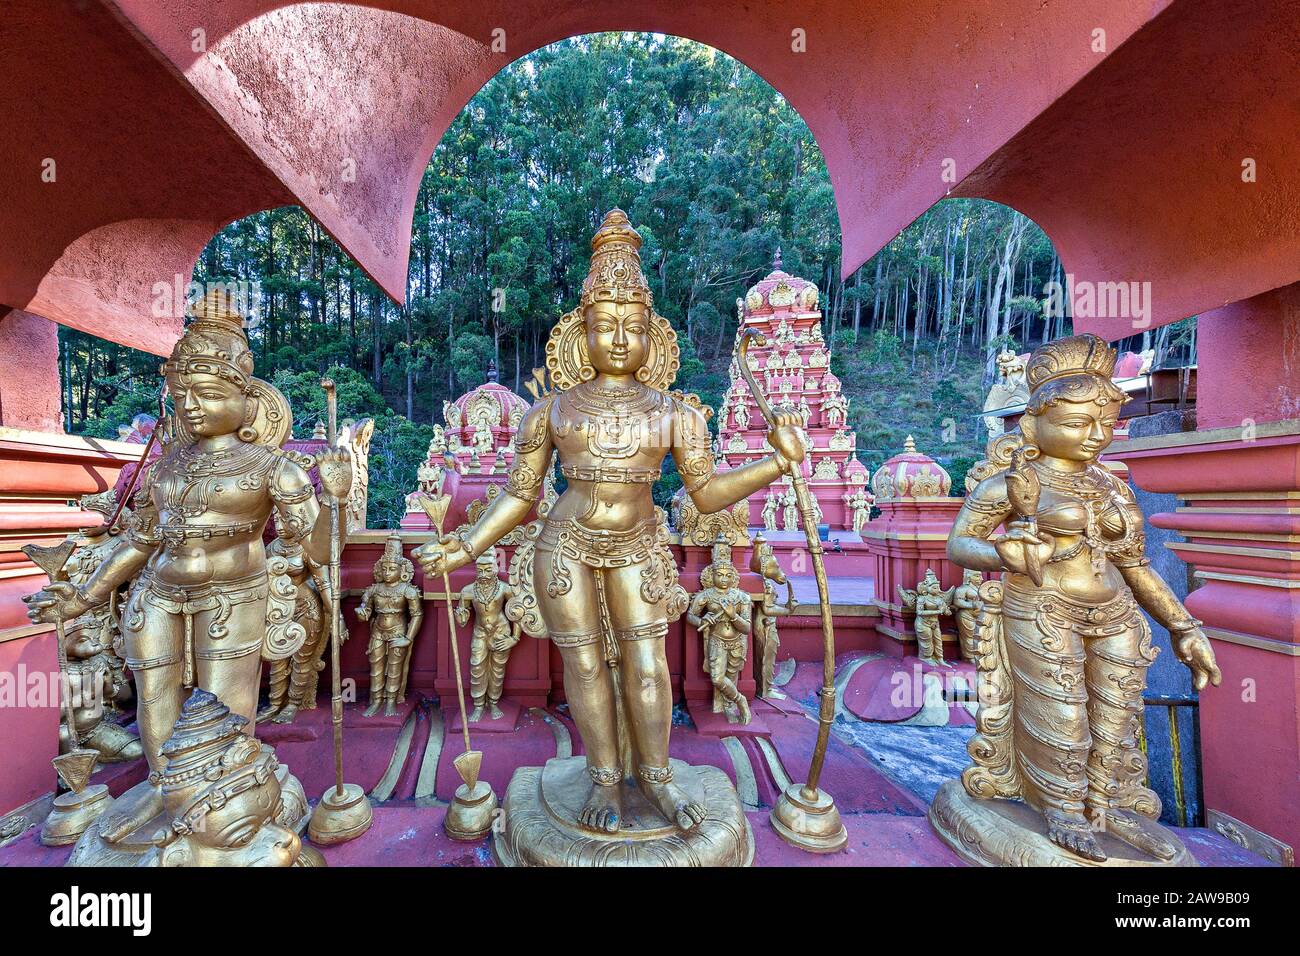 Colorful Seetha Amman Hindu temple in Nuwara Eliya, Sri Lanka Stock Photo